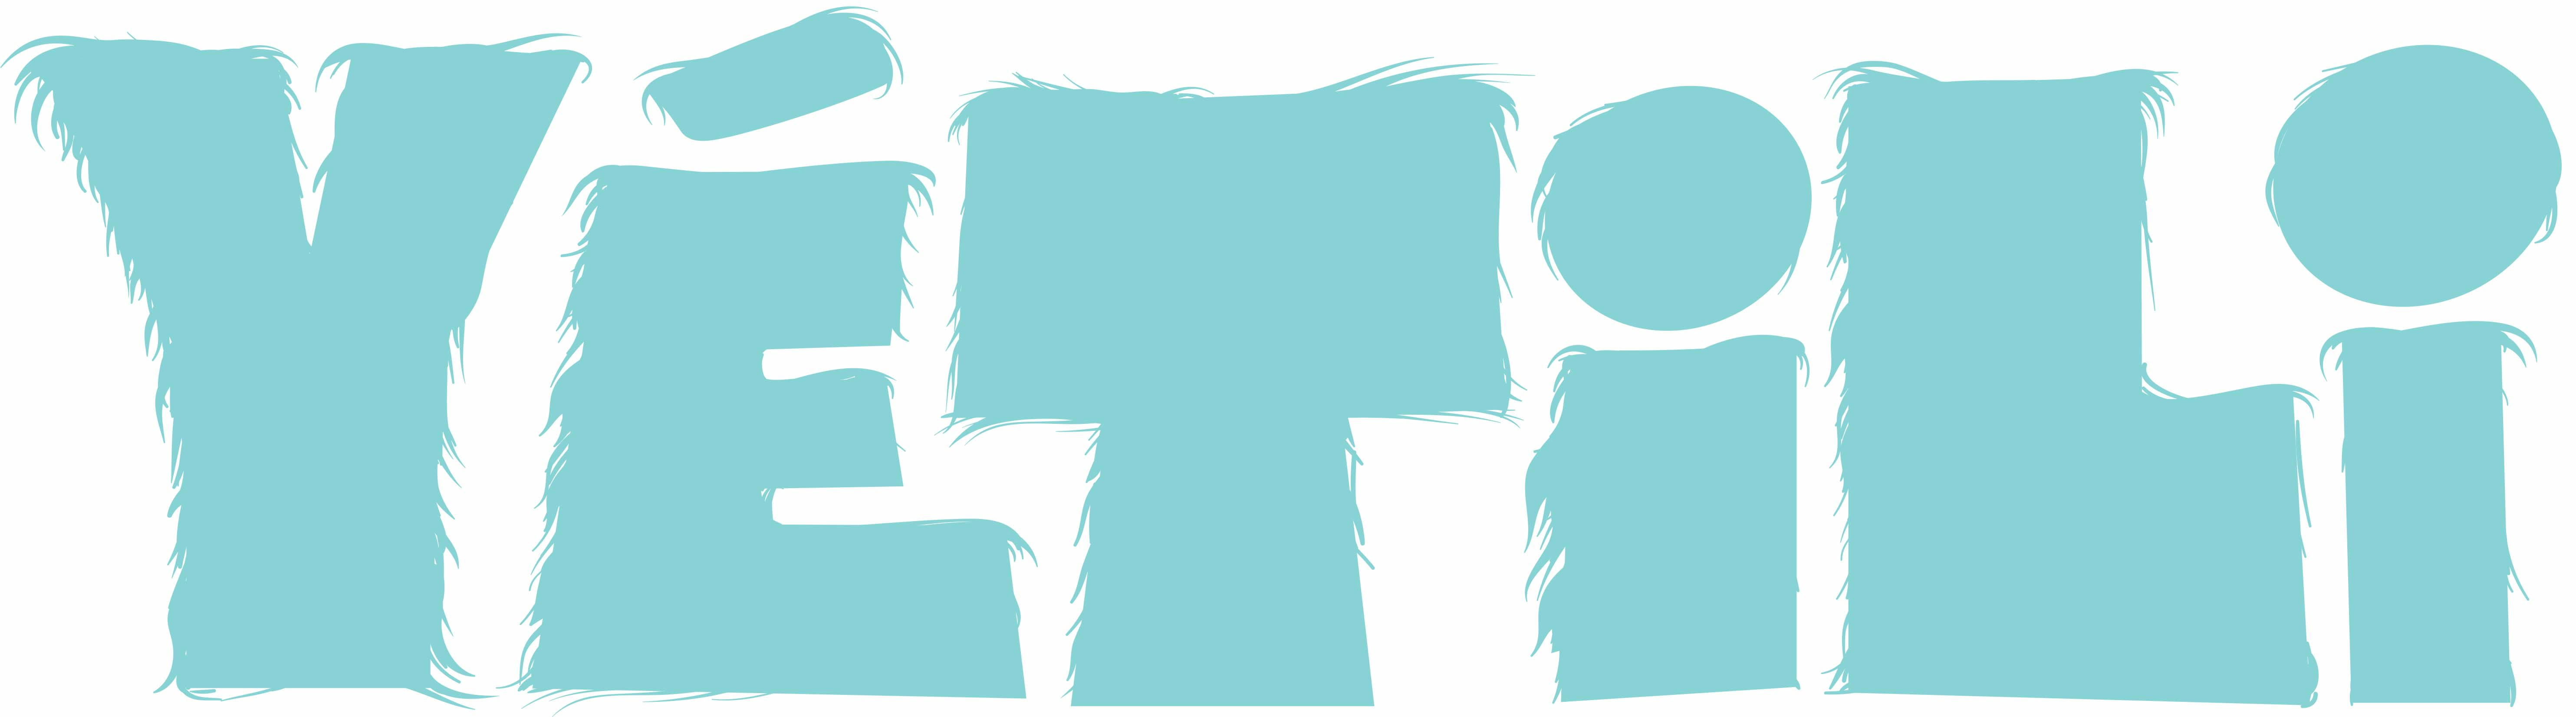 Logo de la série jeunesse Yétili